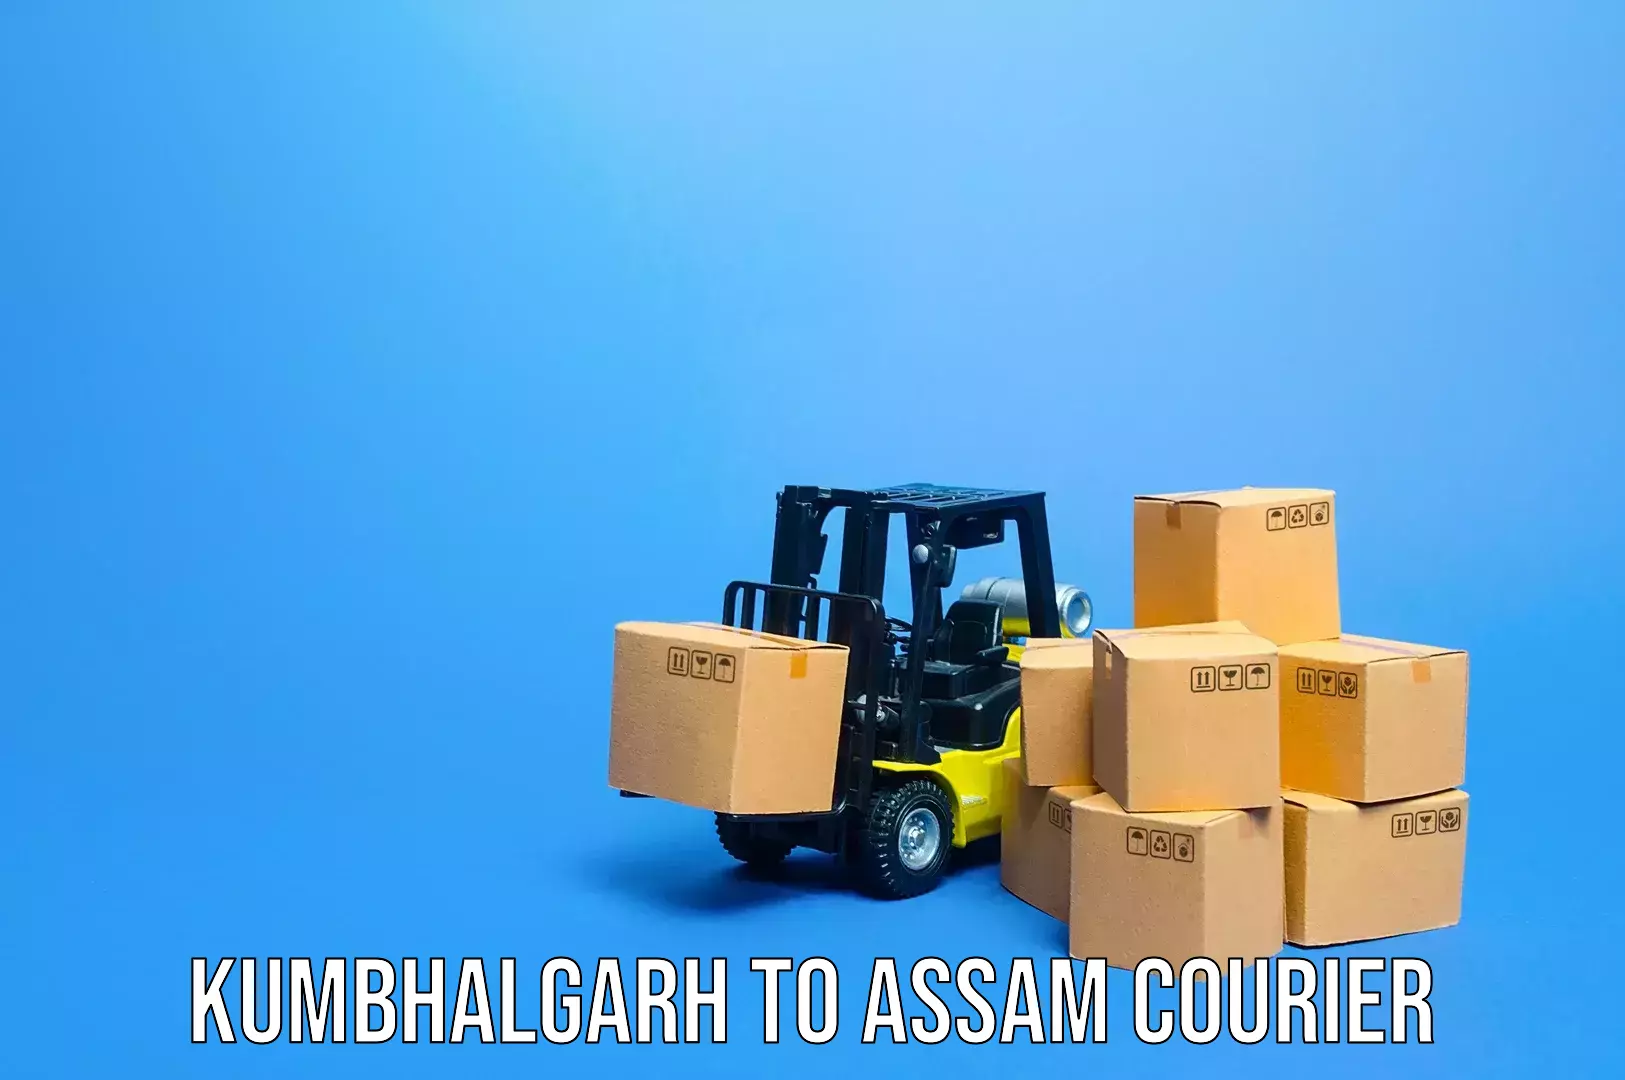 Luggage shipping service Kumbhalgarh to Behali